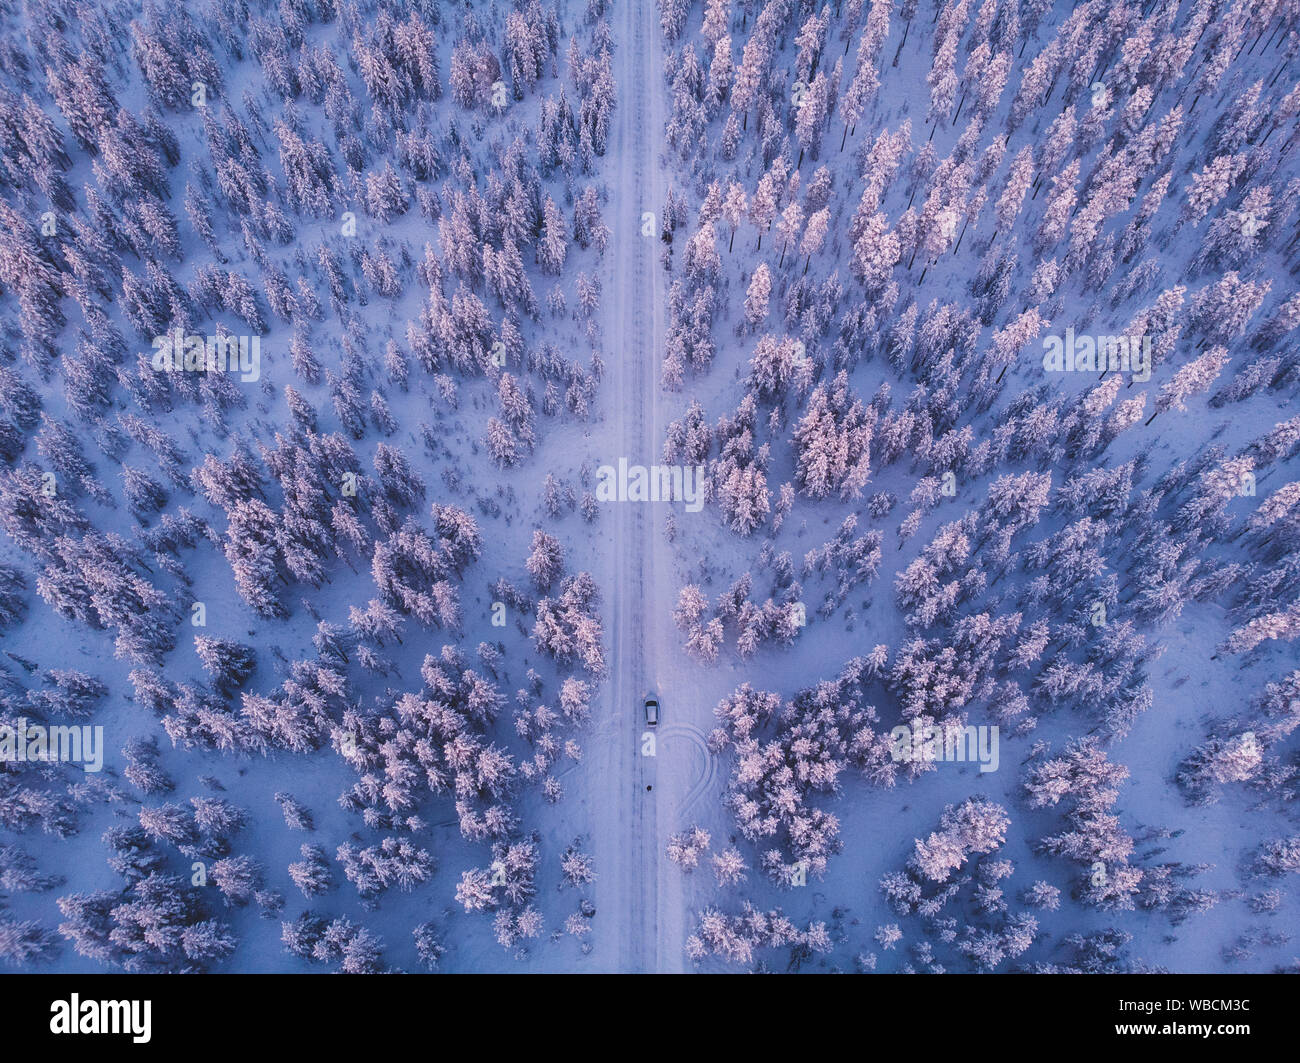 Carretera nevada y bosques nevados vistos desde arriba en Laponia Foto de stock